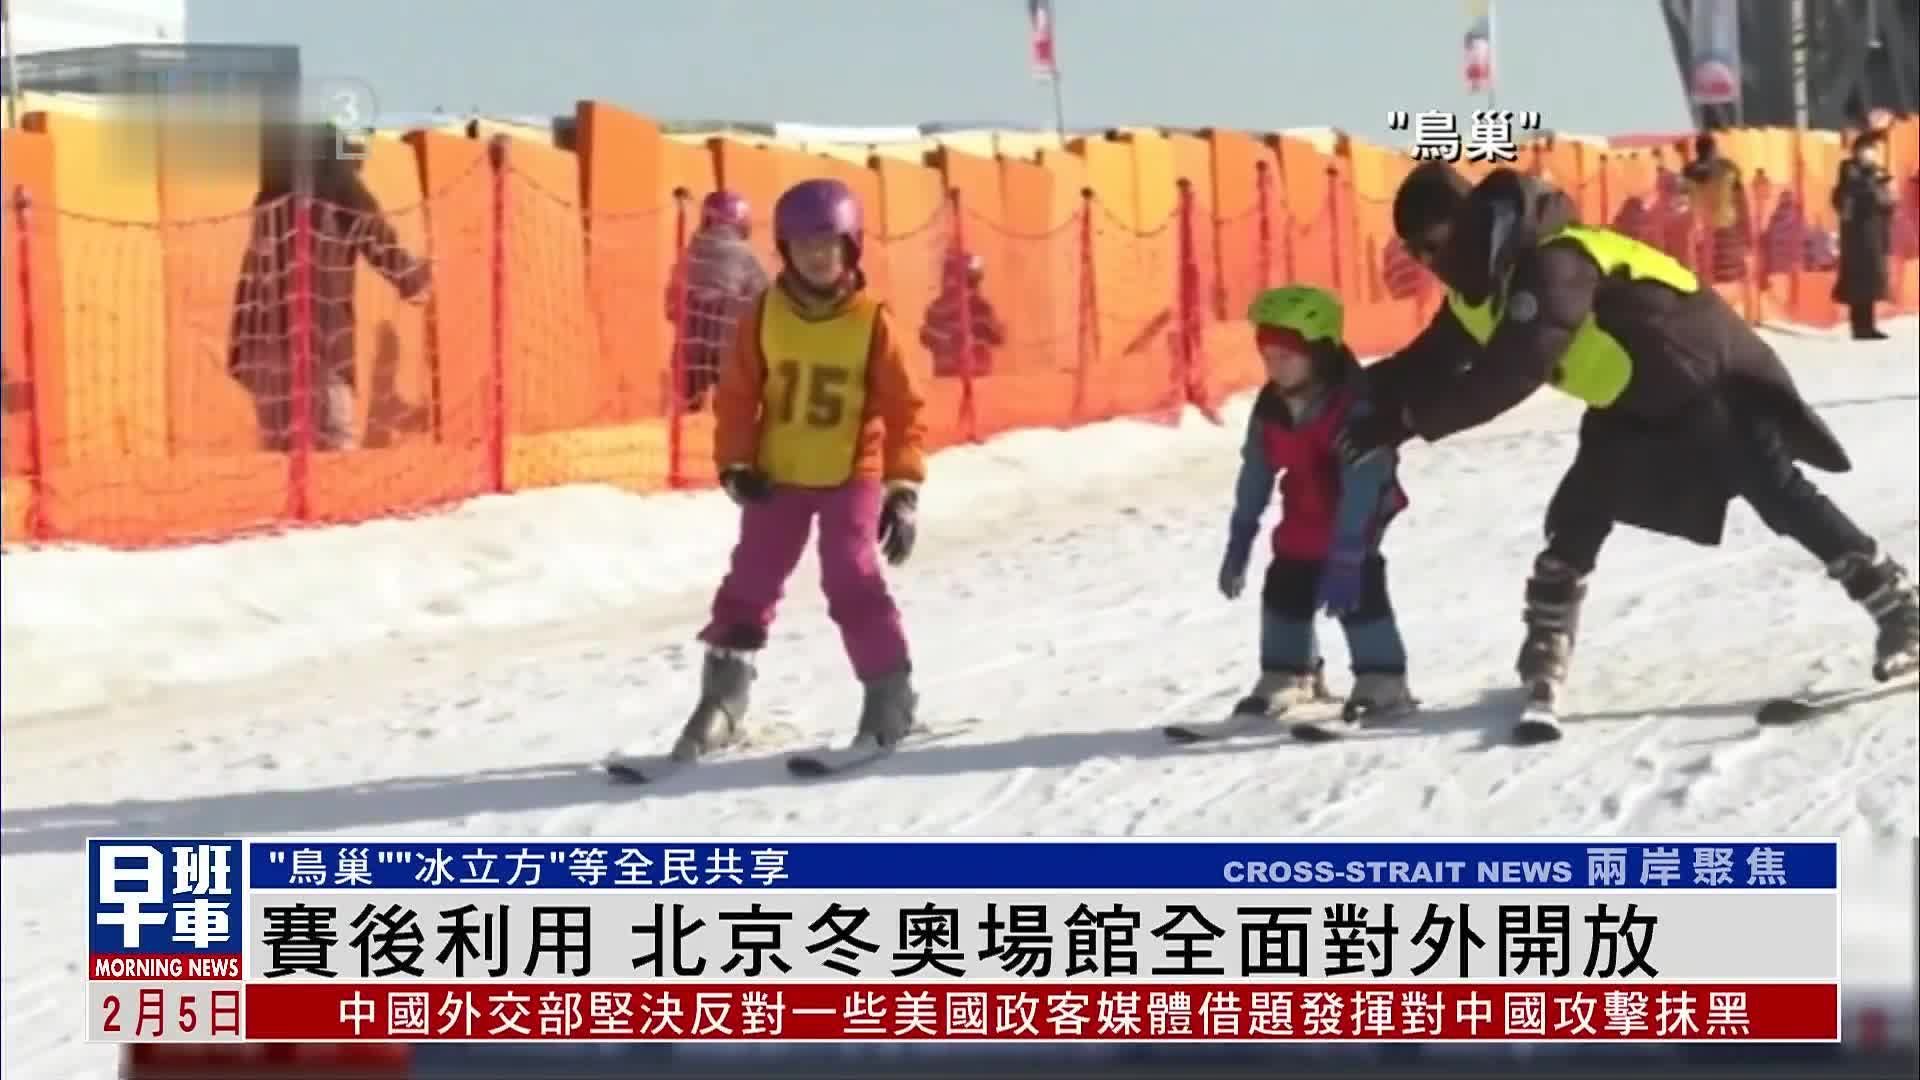 纪念北京冬奥举办一周年系列活动启动